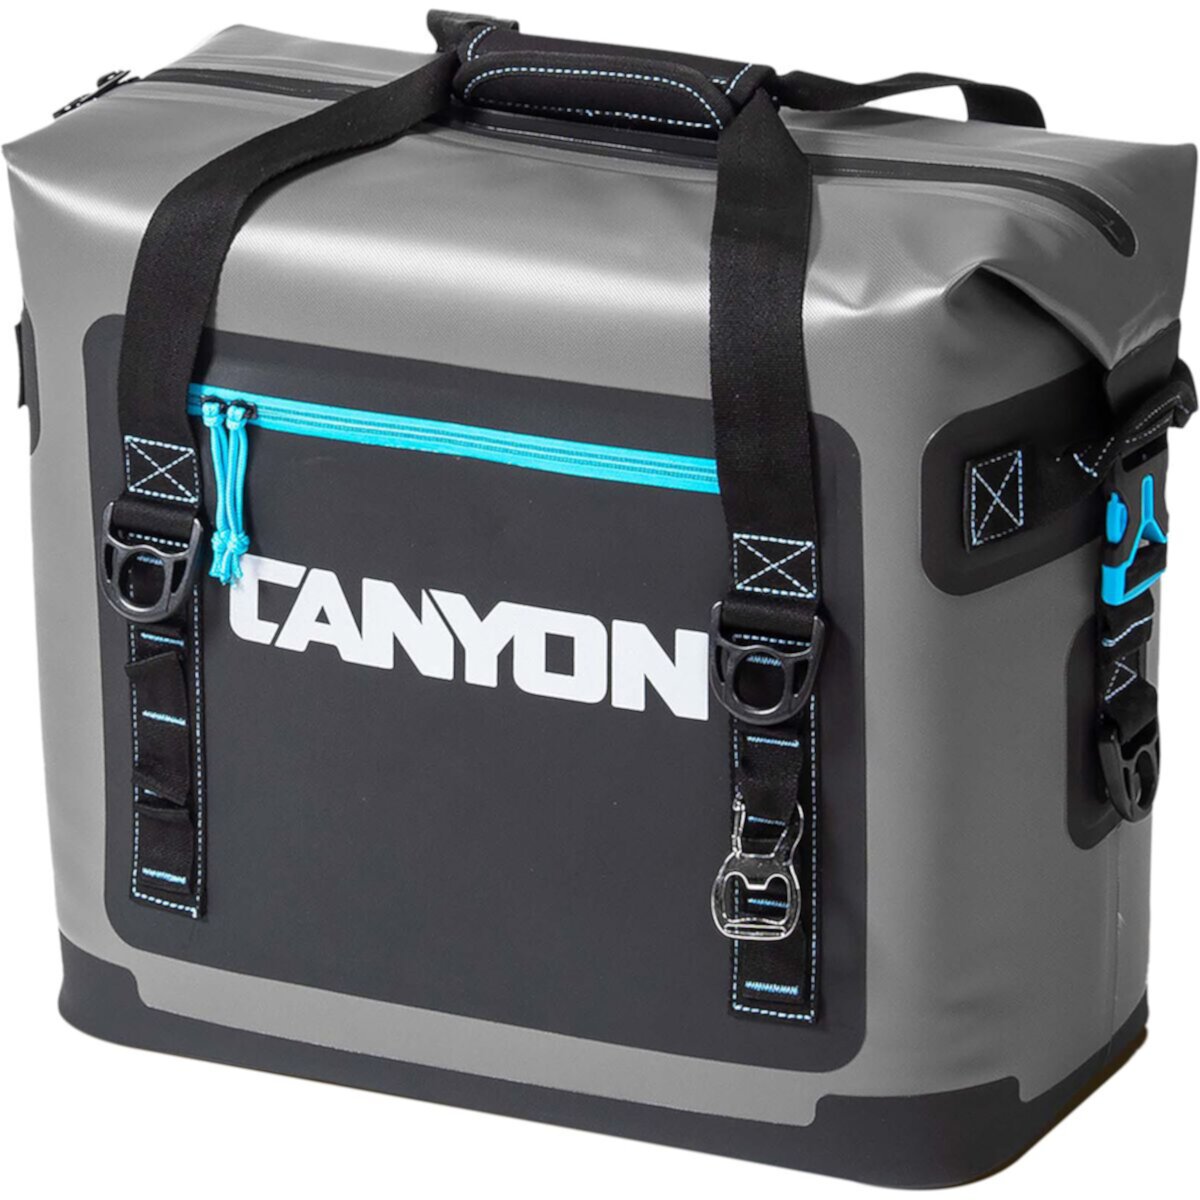 Мягкий охладитель Nomad 20 литров Canyon Coolers